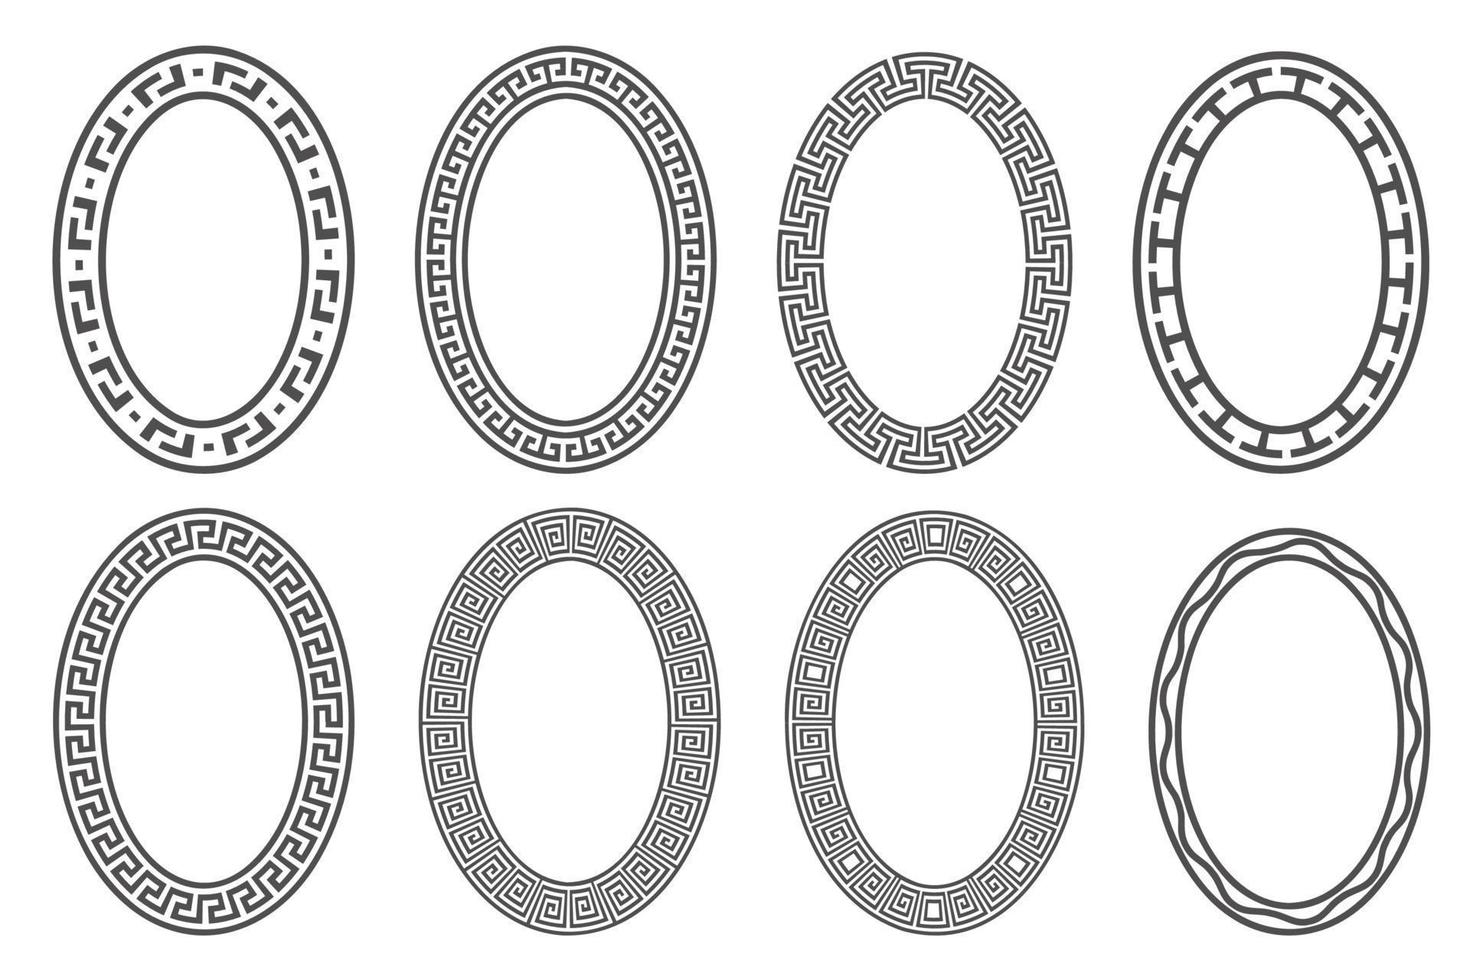 Griekse sleutel ovale frameset. cirkelranden met meanderornamenten. ellips oude ontwerpen. vector